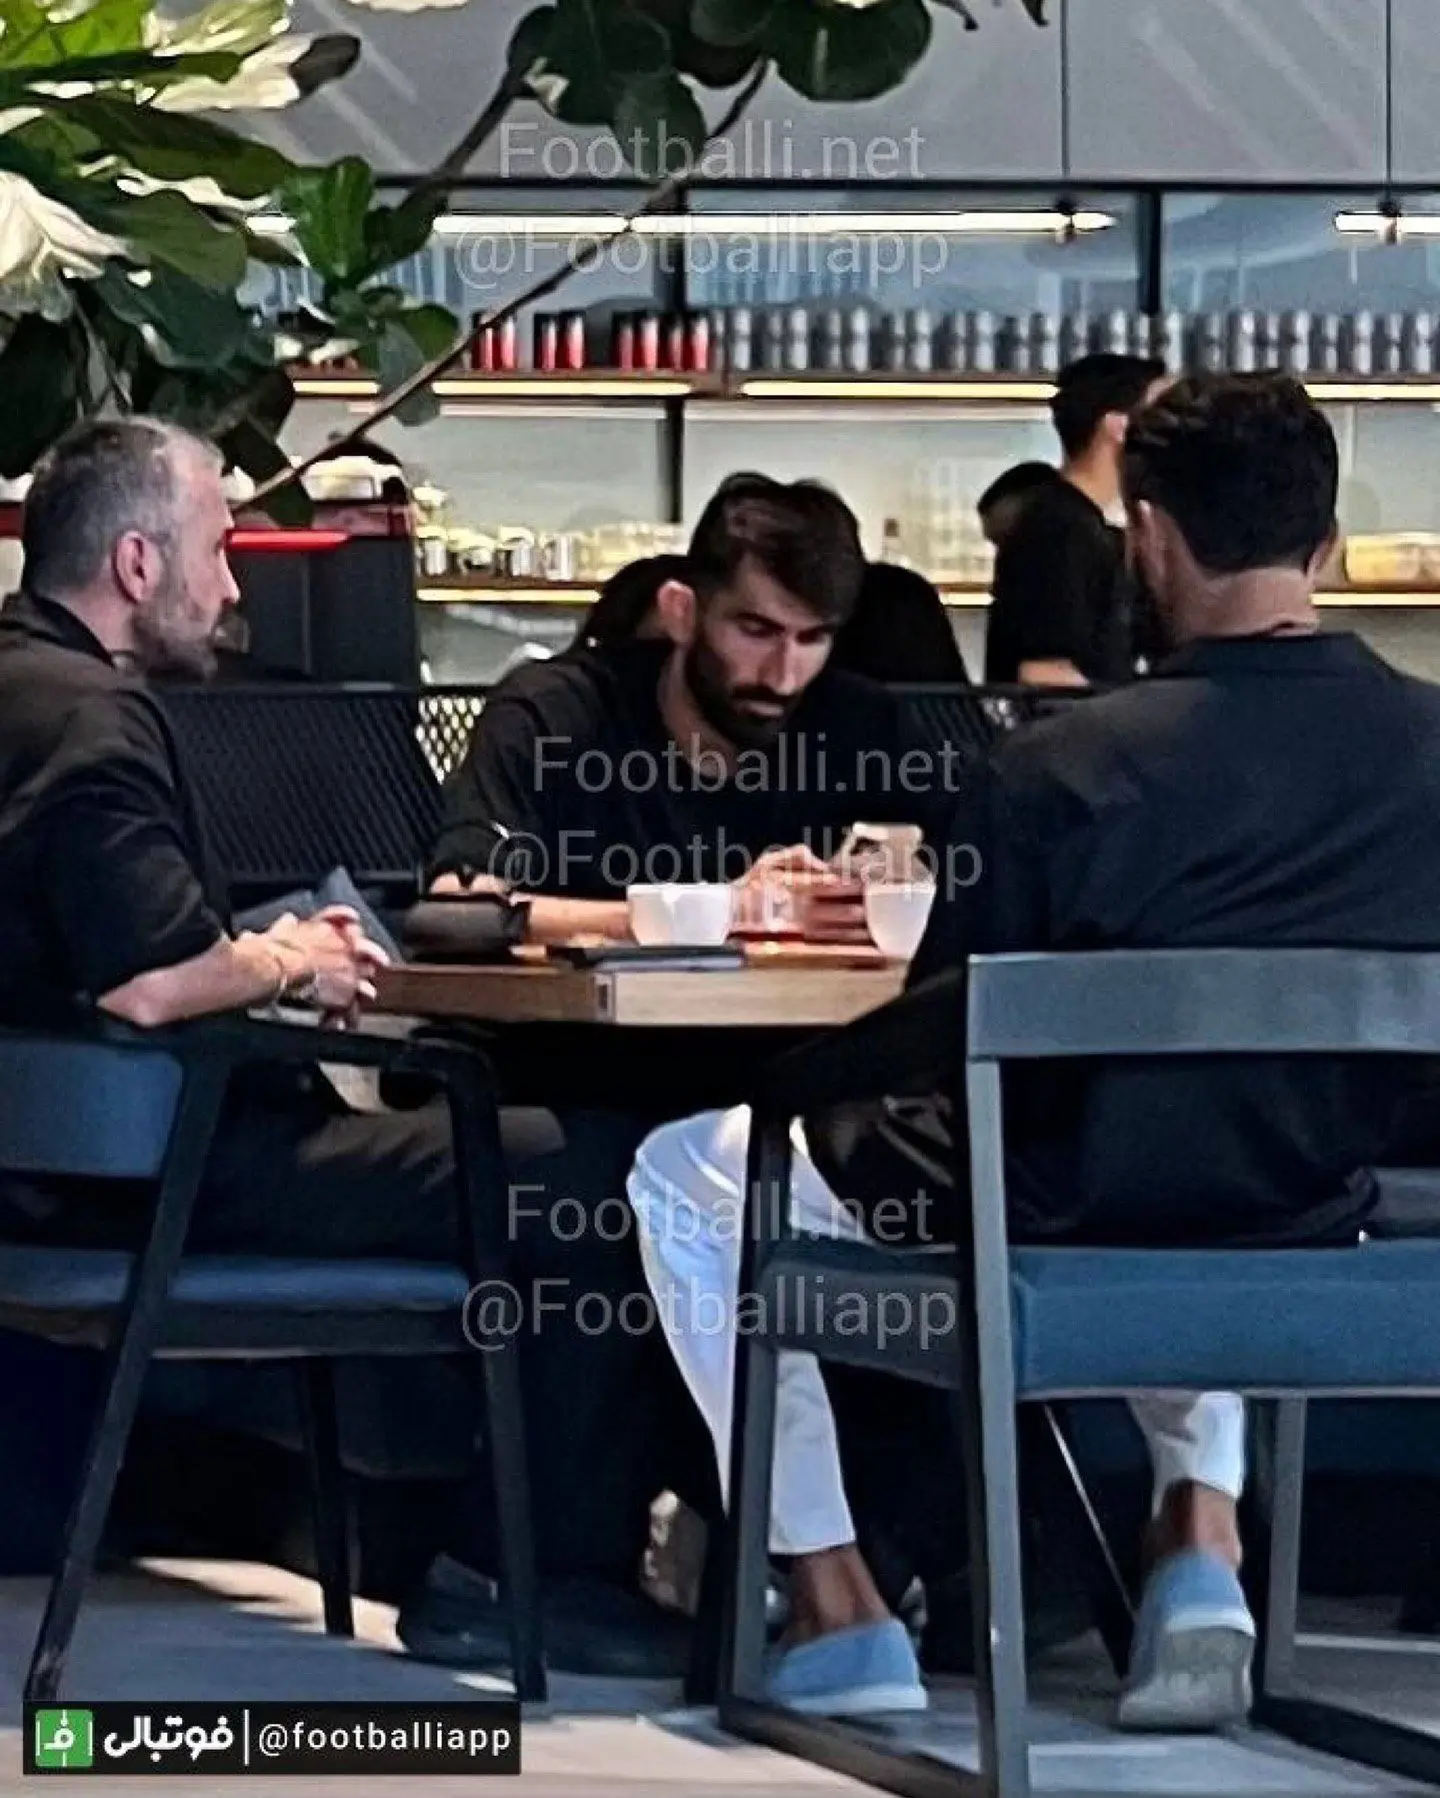 جلسه بیرانوند و رامین رضاییان در کافه خیابان فرشته!/ عکس